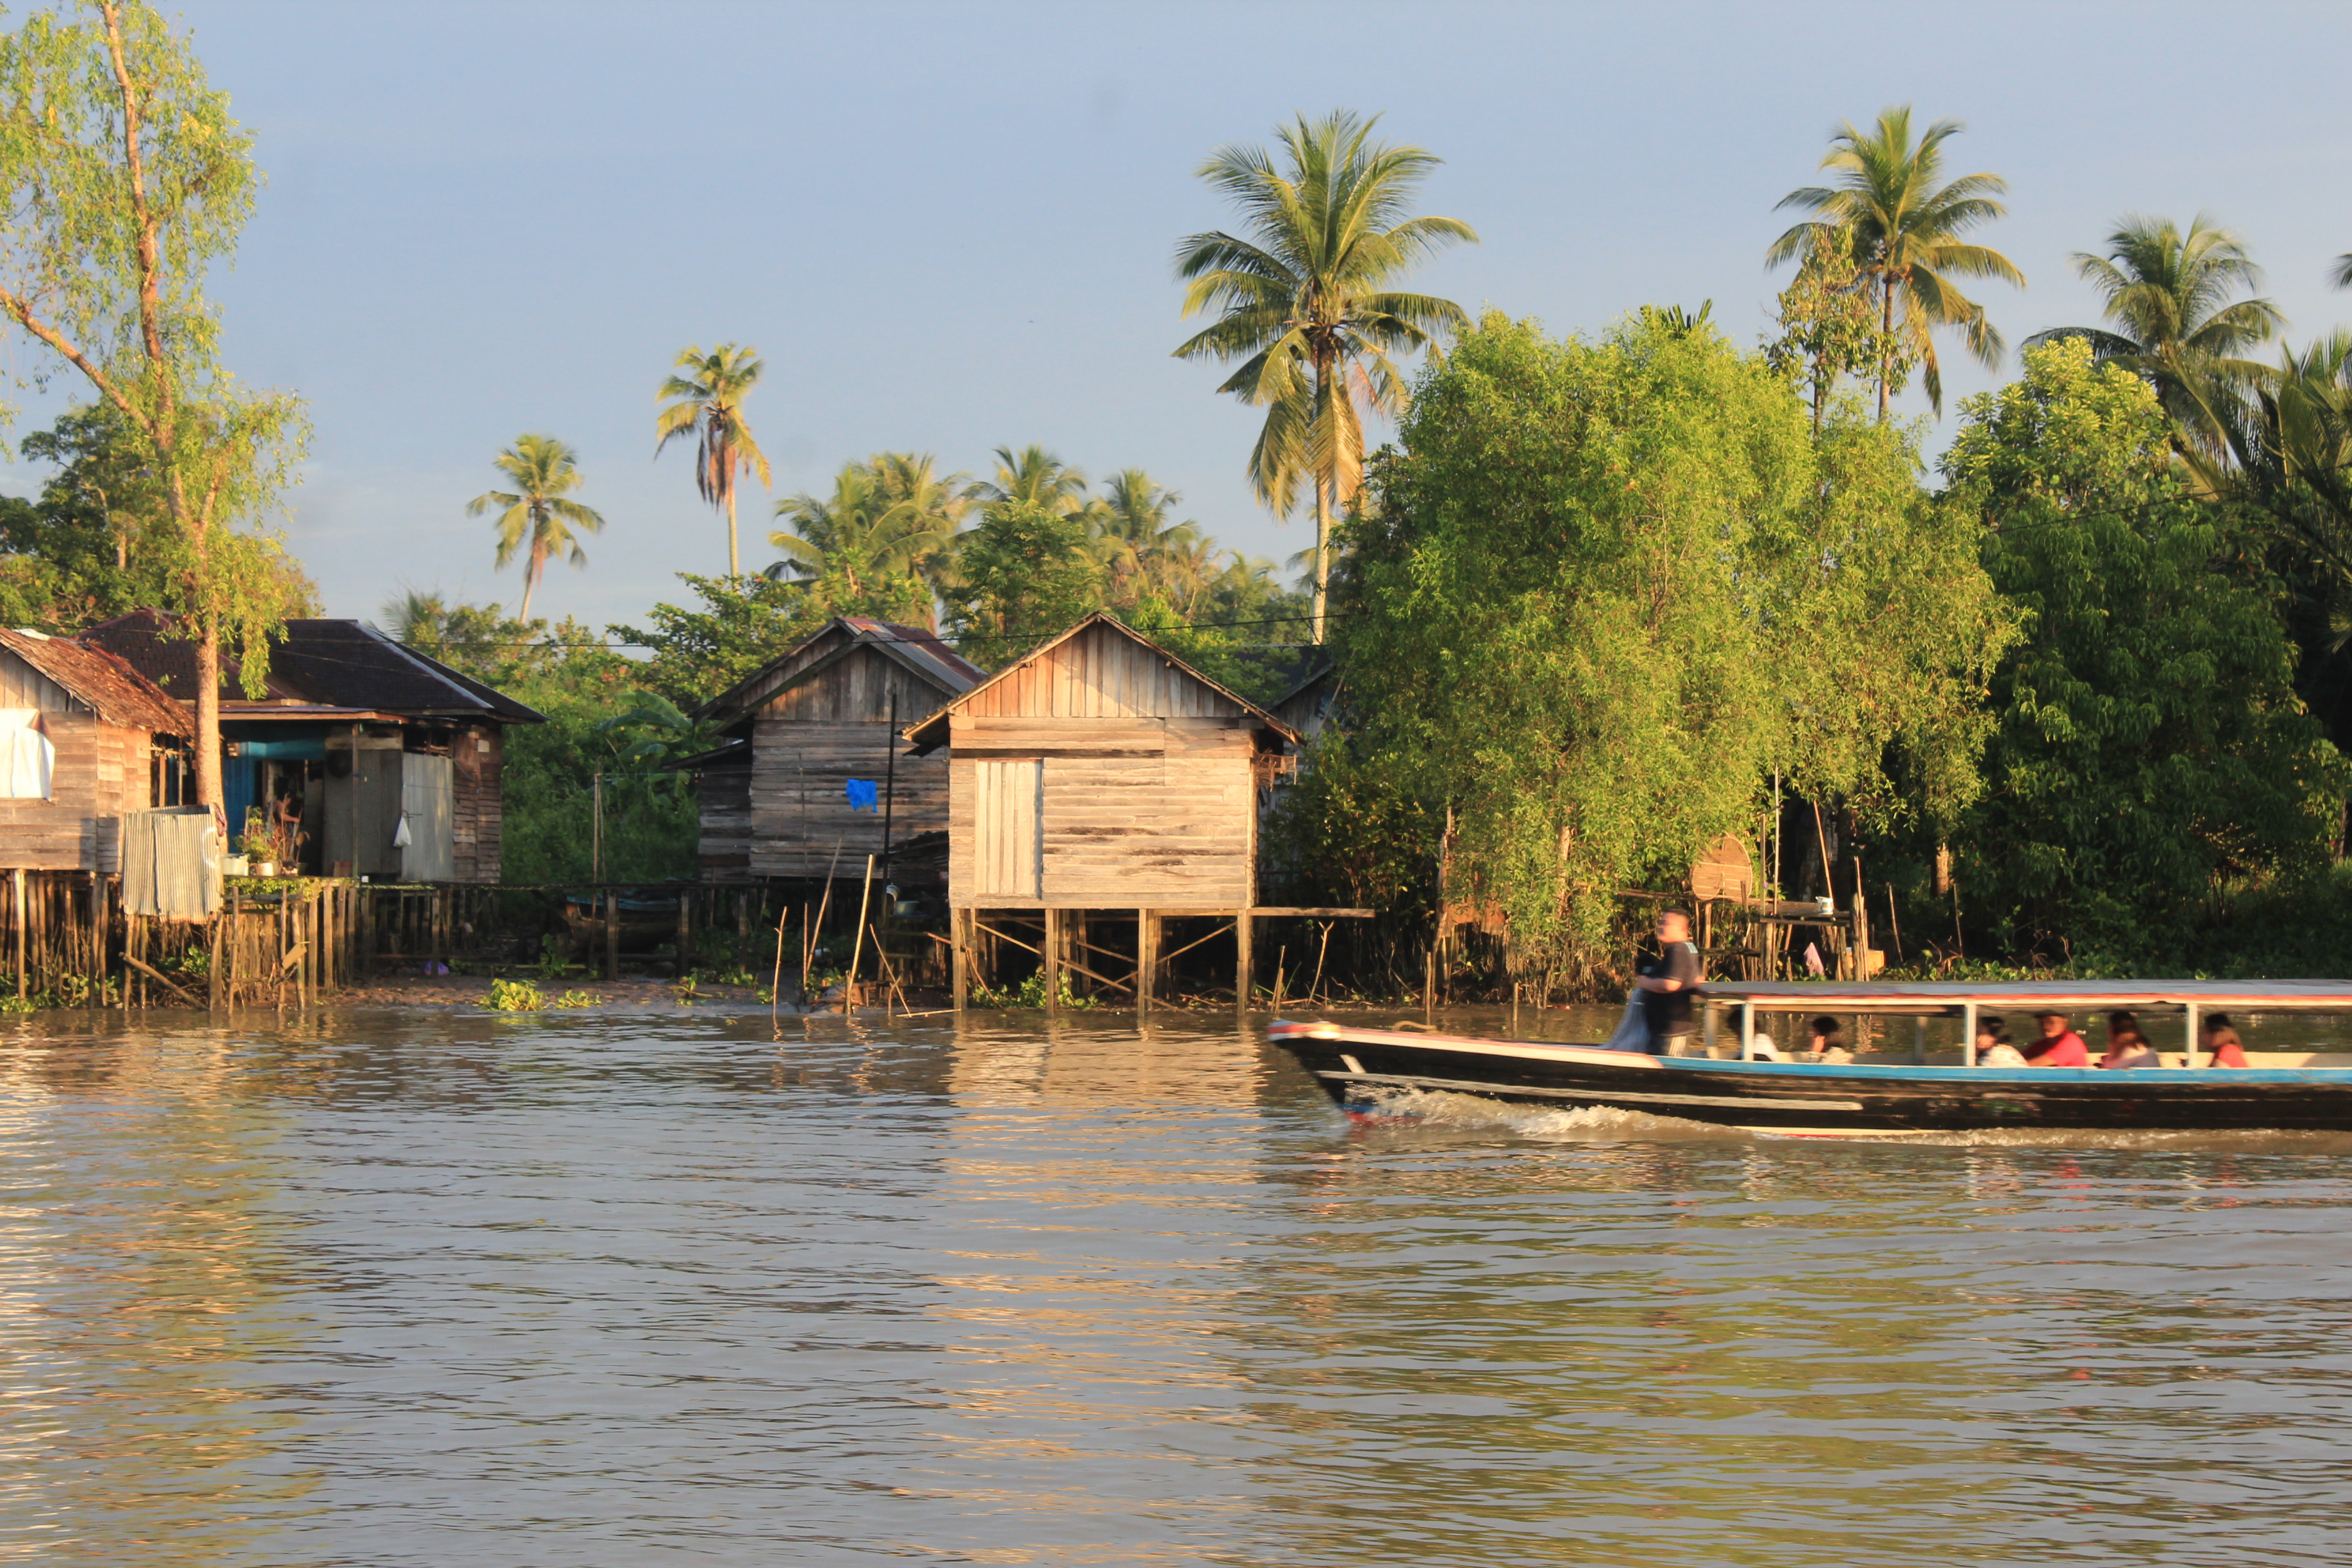 Pemukiman warga pesisir sungai Martapura yang menjadi pemandangan saat perjalanan menuju lokasi pasar terapung | Foto: Vita Ayu Anggraeni / GNFI